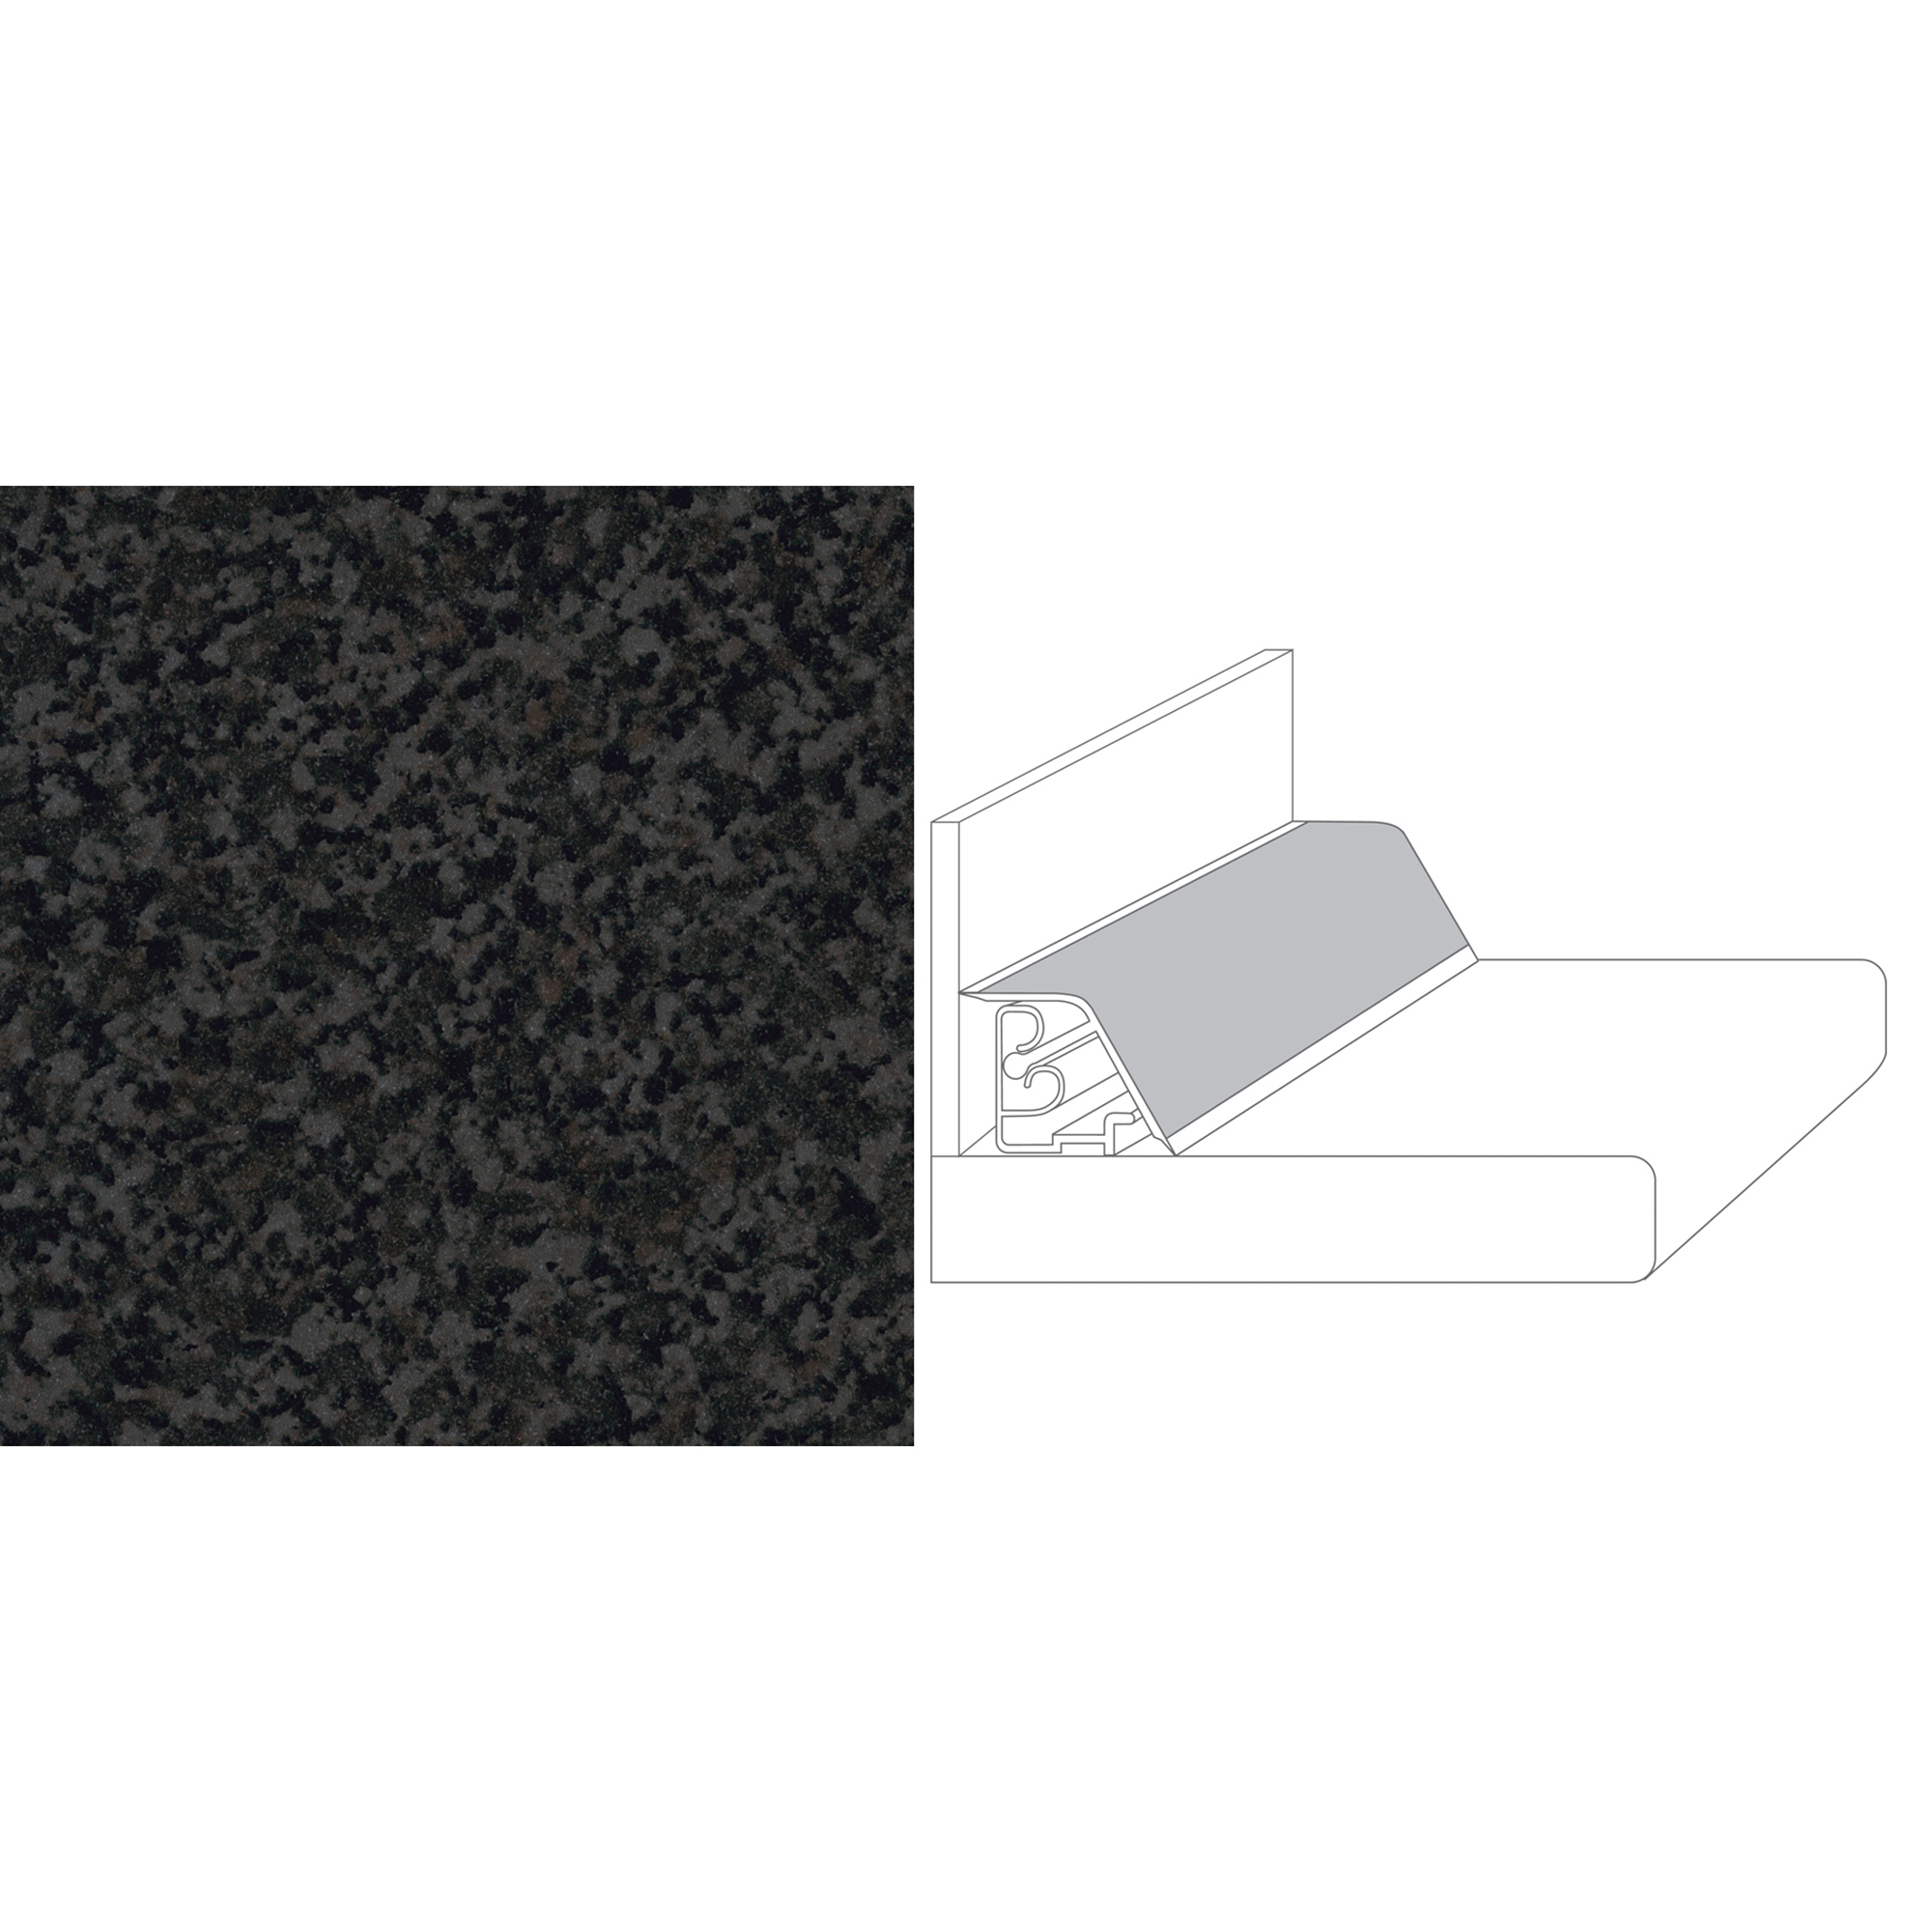 Wandanschlussprofil Granit-Optik anthrazit 3 x 3,5 x 300 cm + product picture